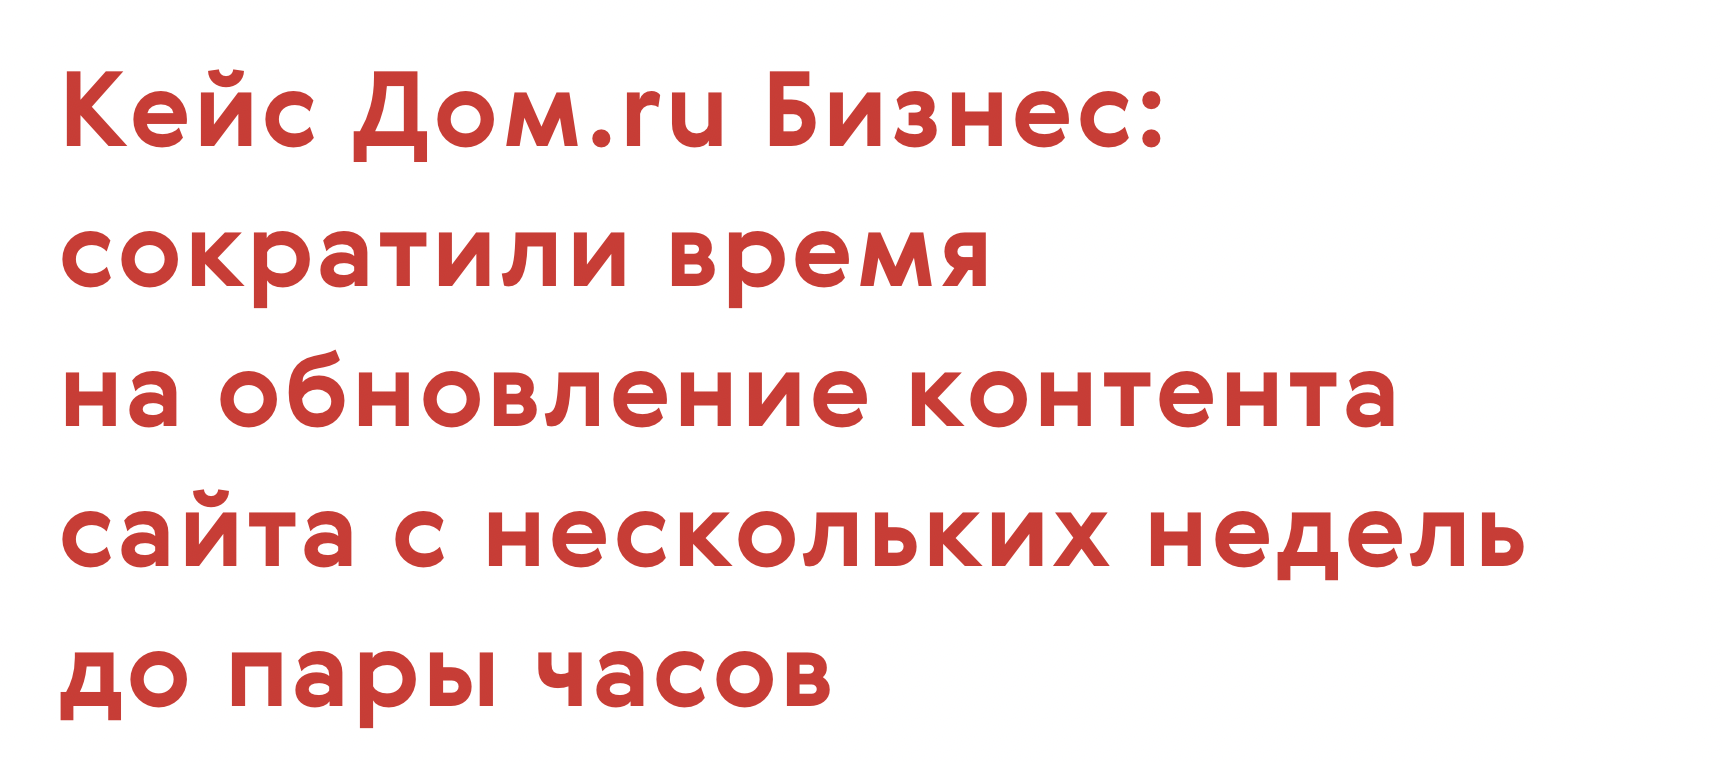 Кейс Дом.ru Бизнес: сократили время на обновление контента сайта с нескольких недель до пары часов